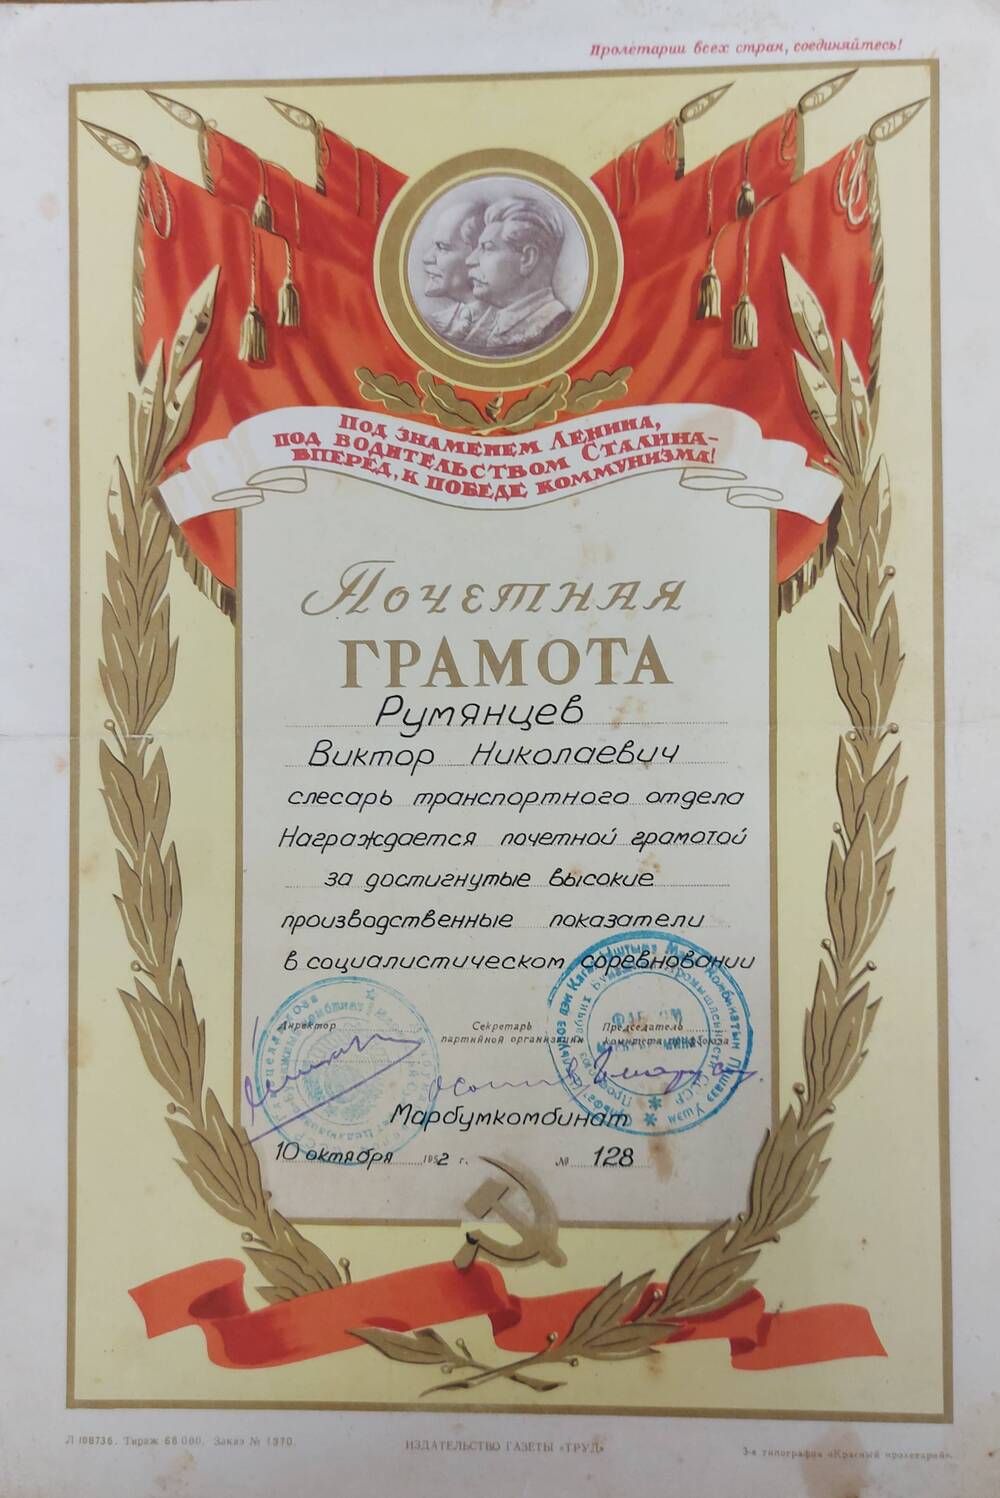 Грамота почетная Марбумкомбината на имя Румянцева В.Н. за достигнутые высокие  производственные показатели в социалистическом соревновании